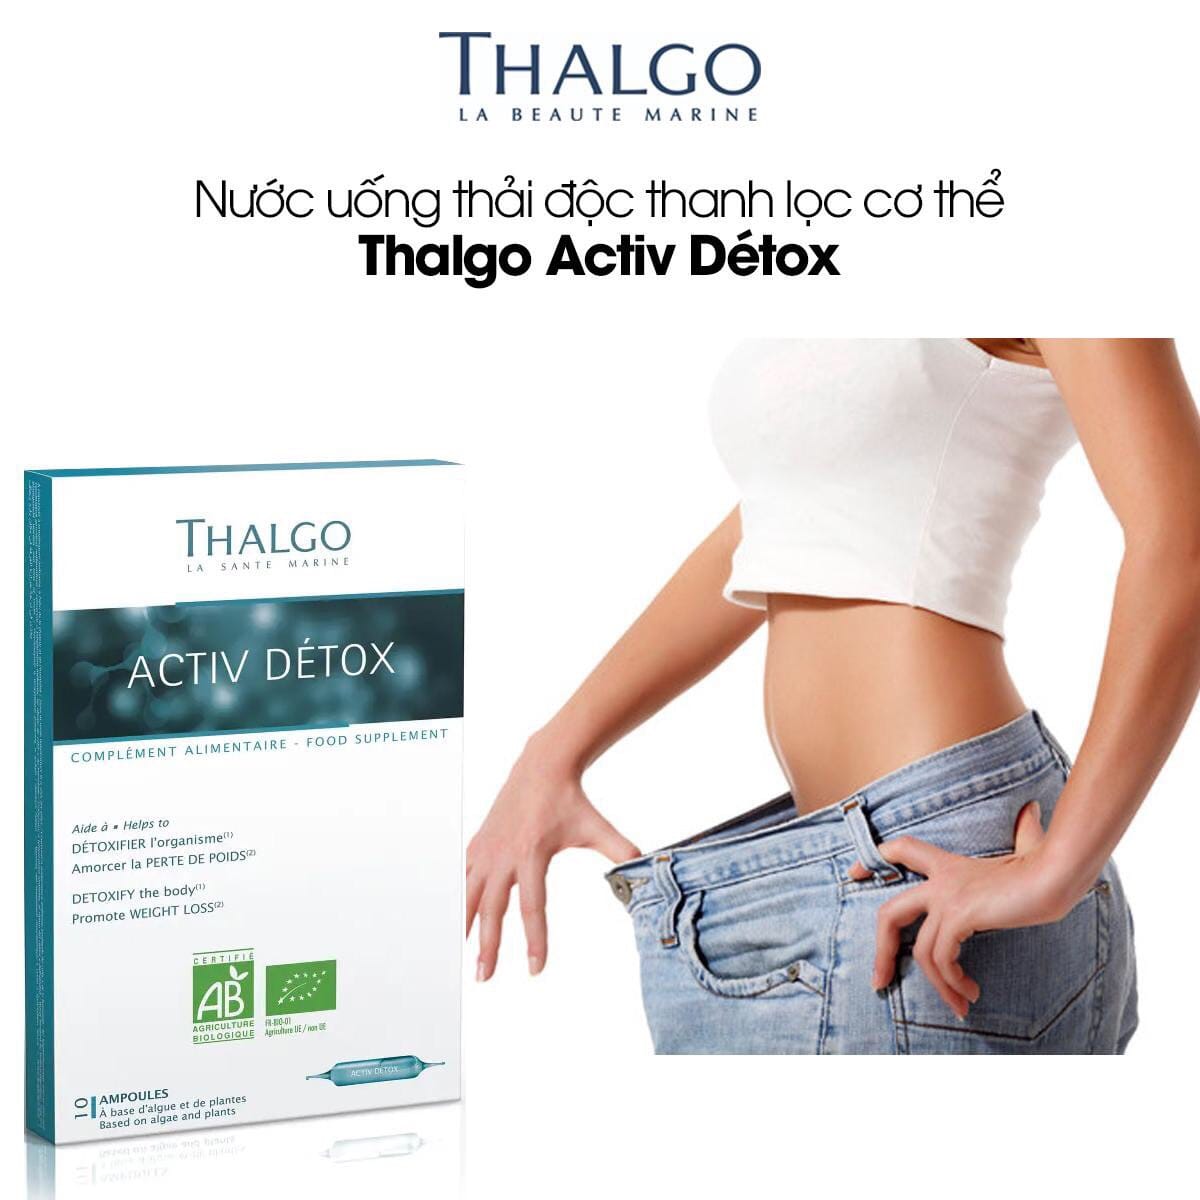 Nước uống thải độc thanh lọc cơ thể Thalgo Activ Detox kiểm soát cân nặng tối ưu